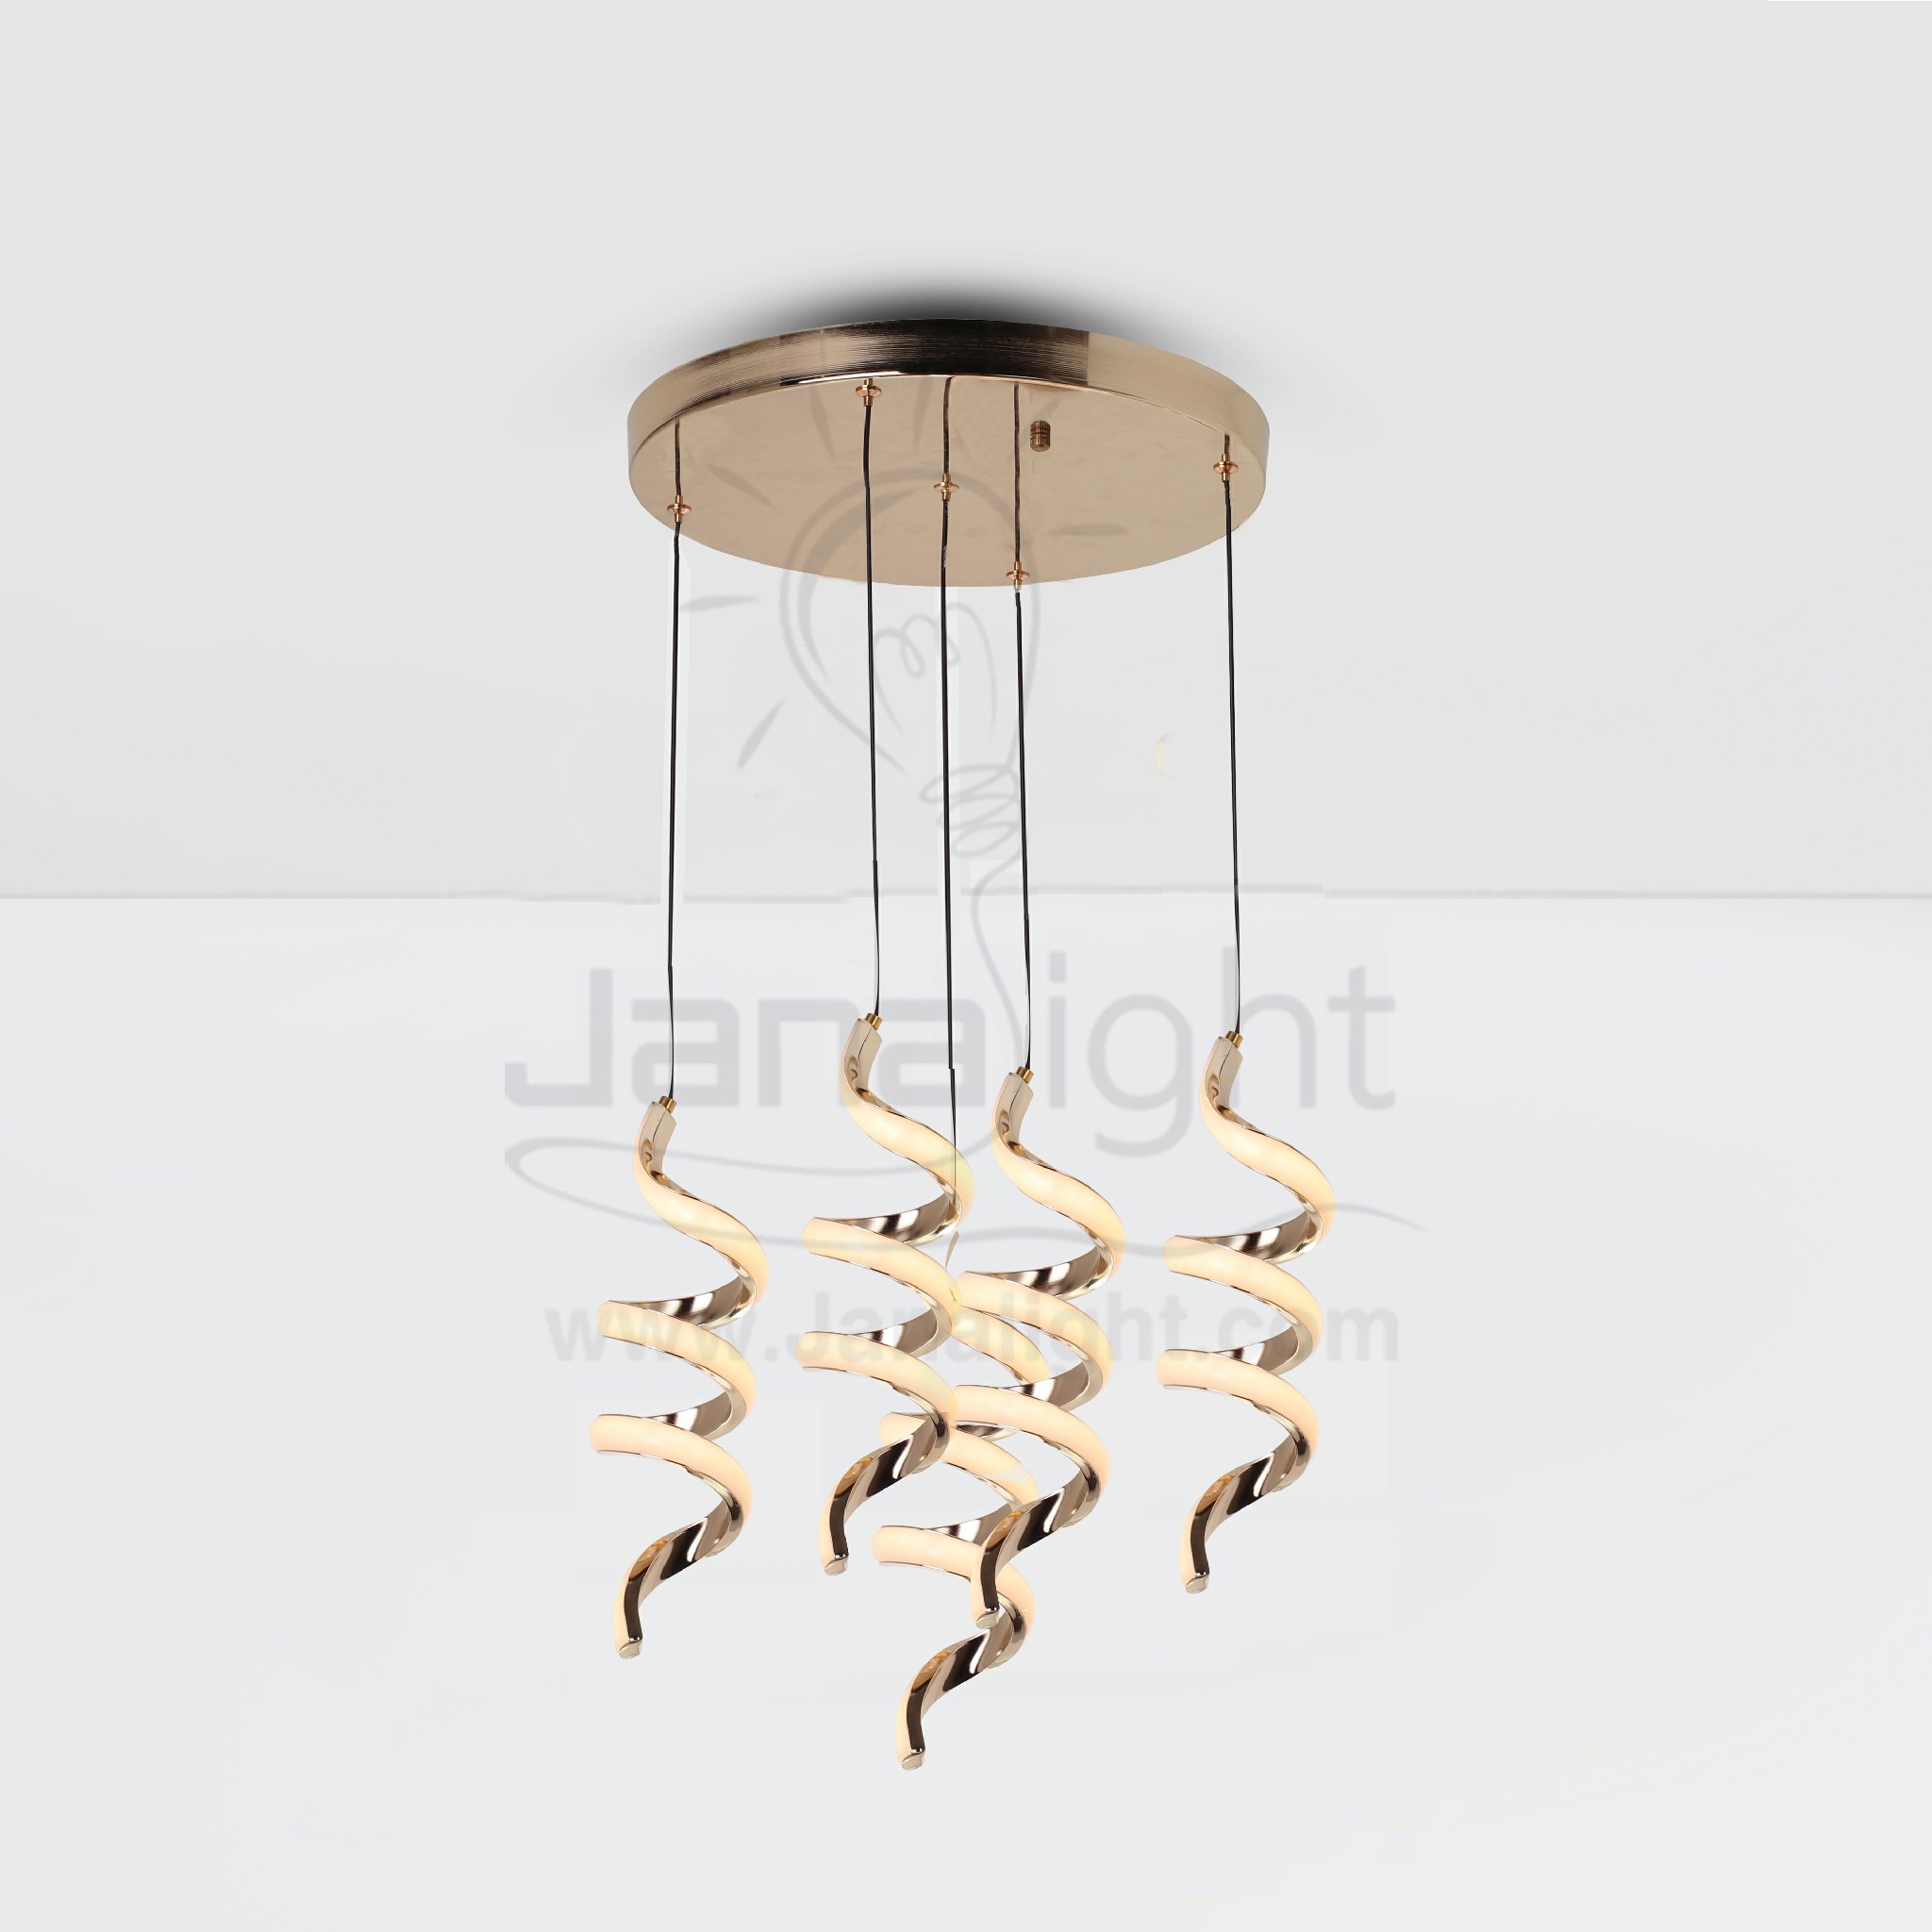 دلاية ليد خمس قطع نوازل شكل حلزوني Modern luminaire hanglamp ceiling 4 spiral shape pendant light led chandeliers